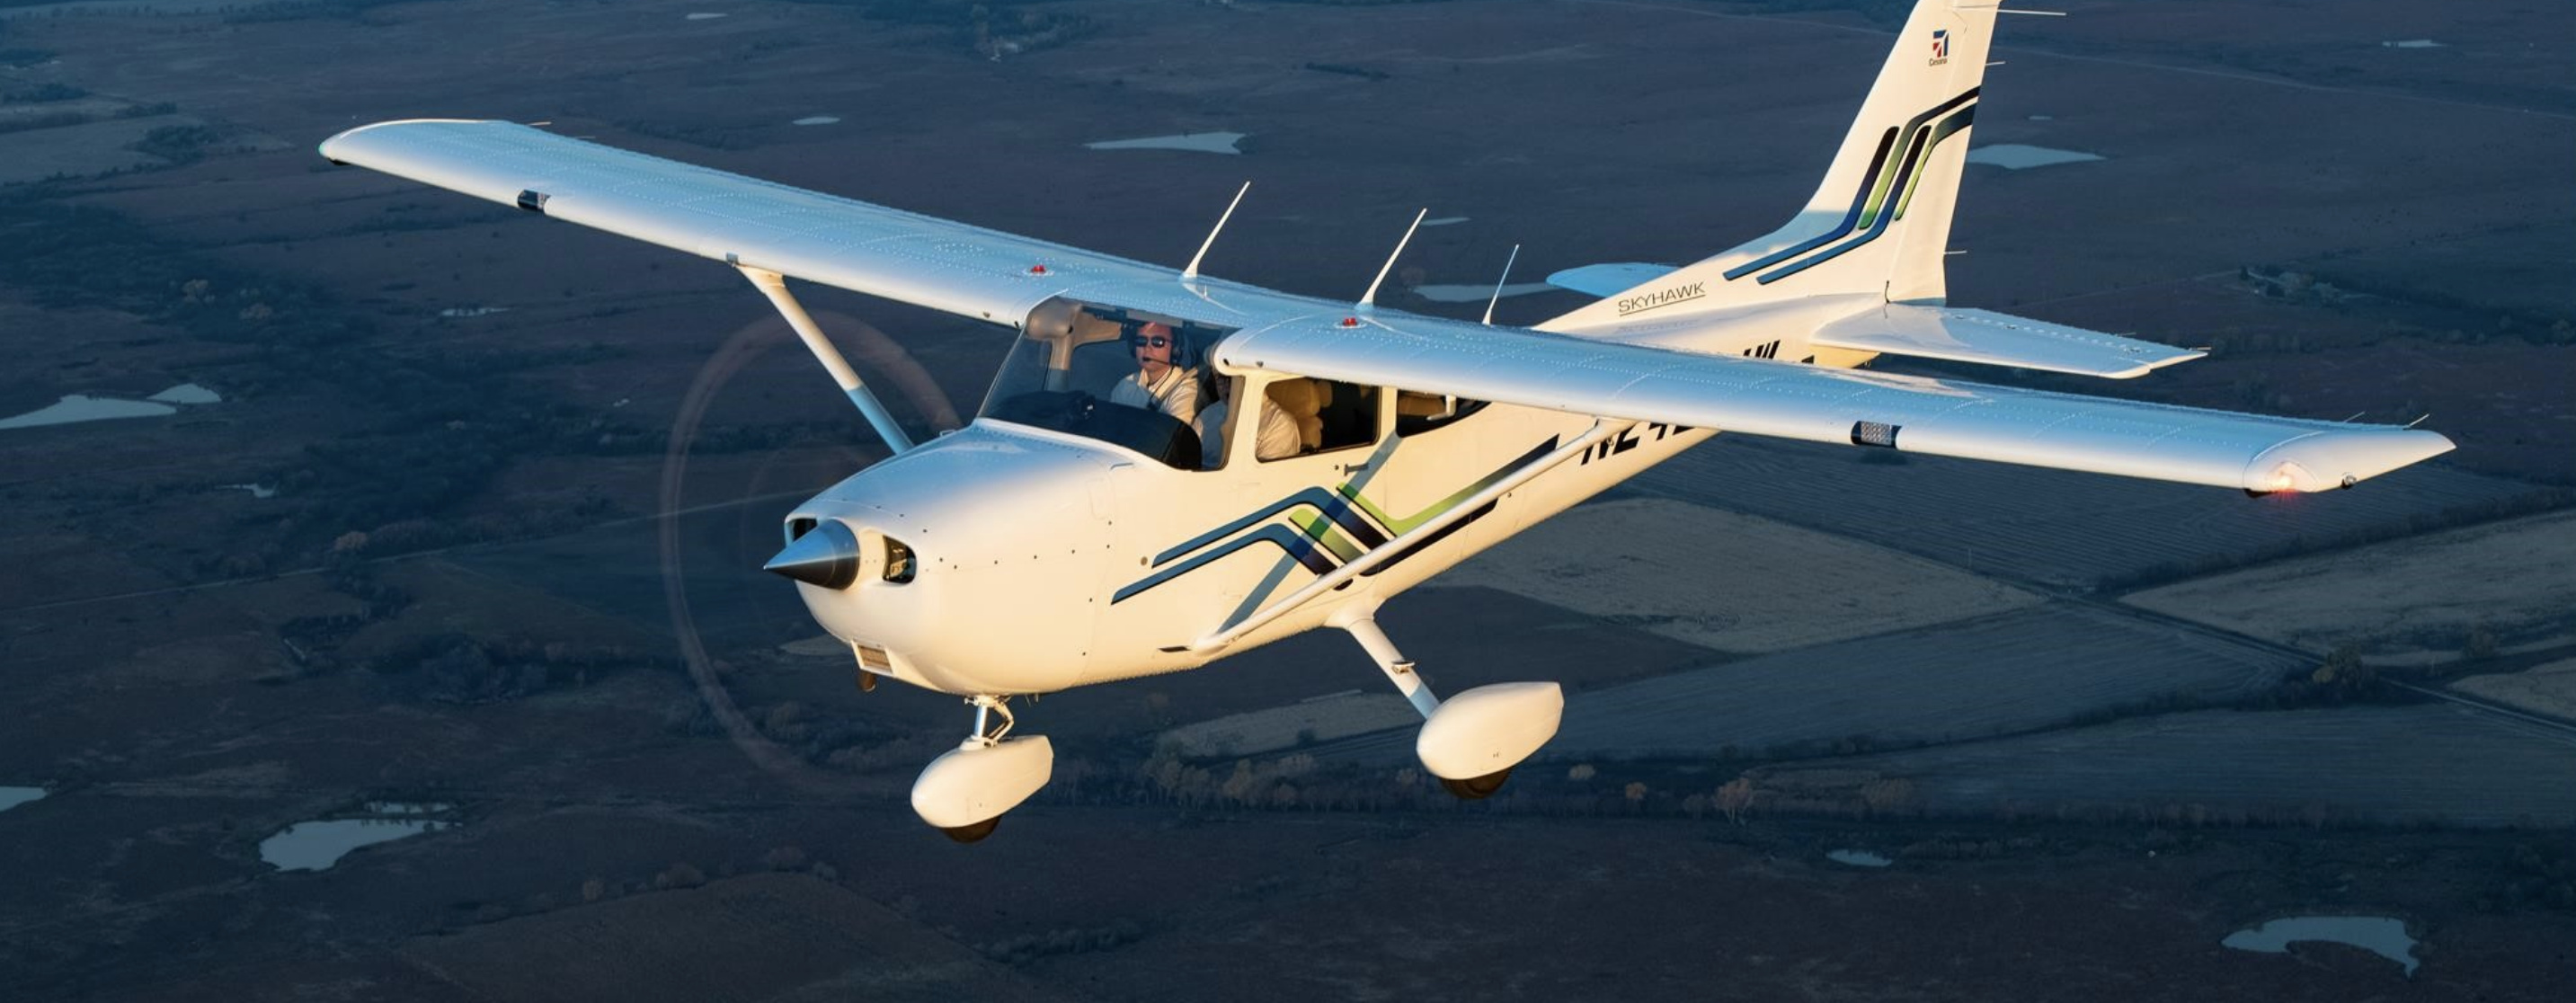 Cessna 172, High-performance aircraft, Skyhawk model, Versatile airplane, 2870x1120 Dual Screen Desktop